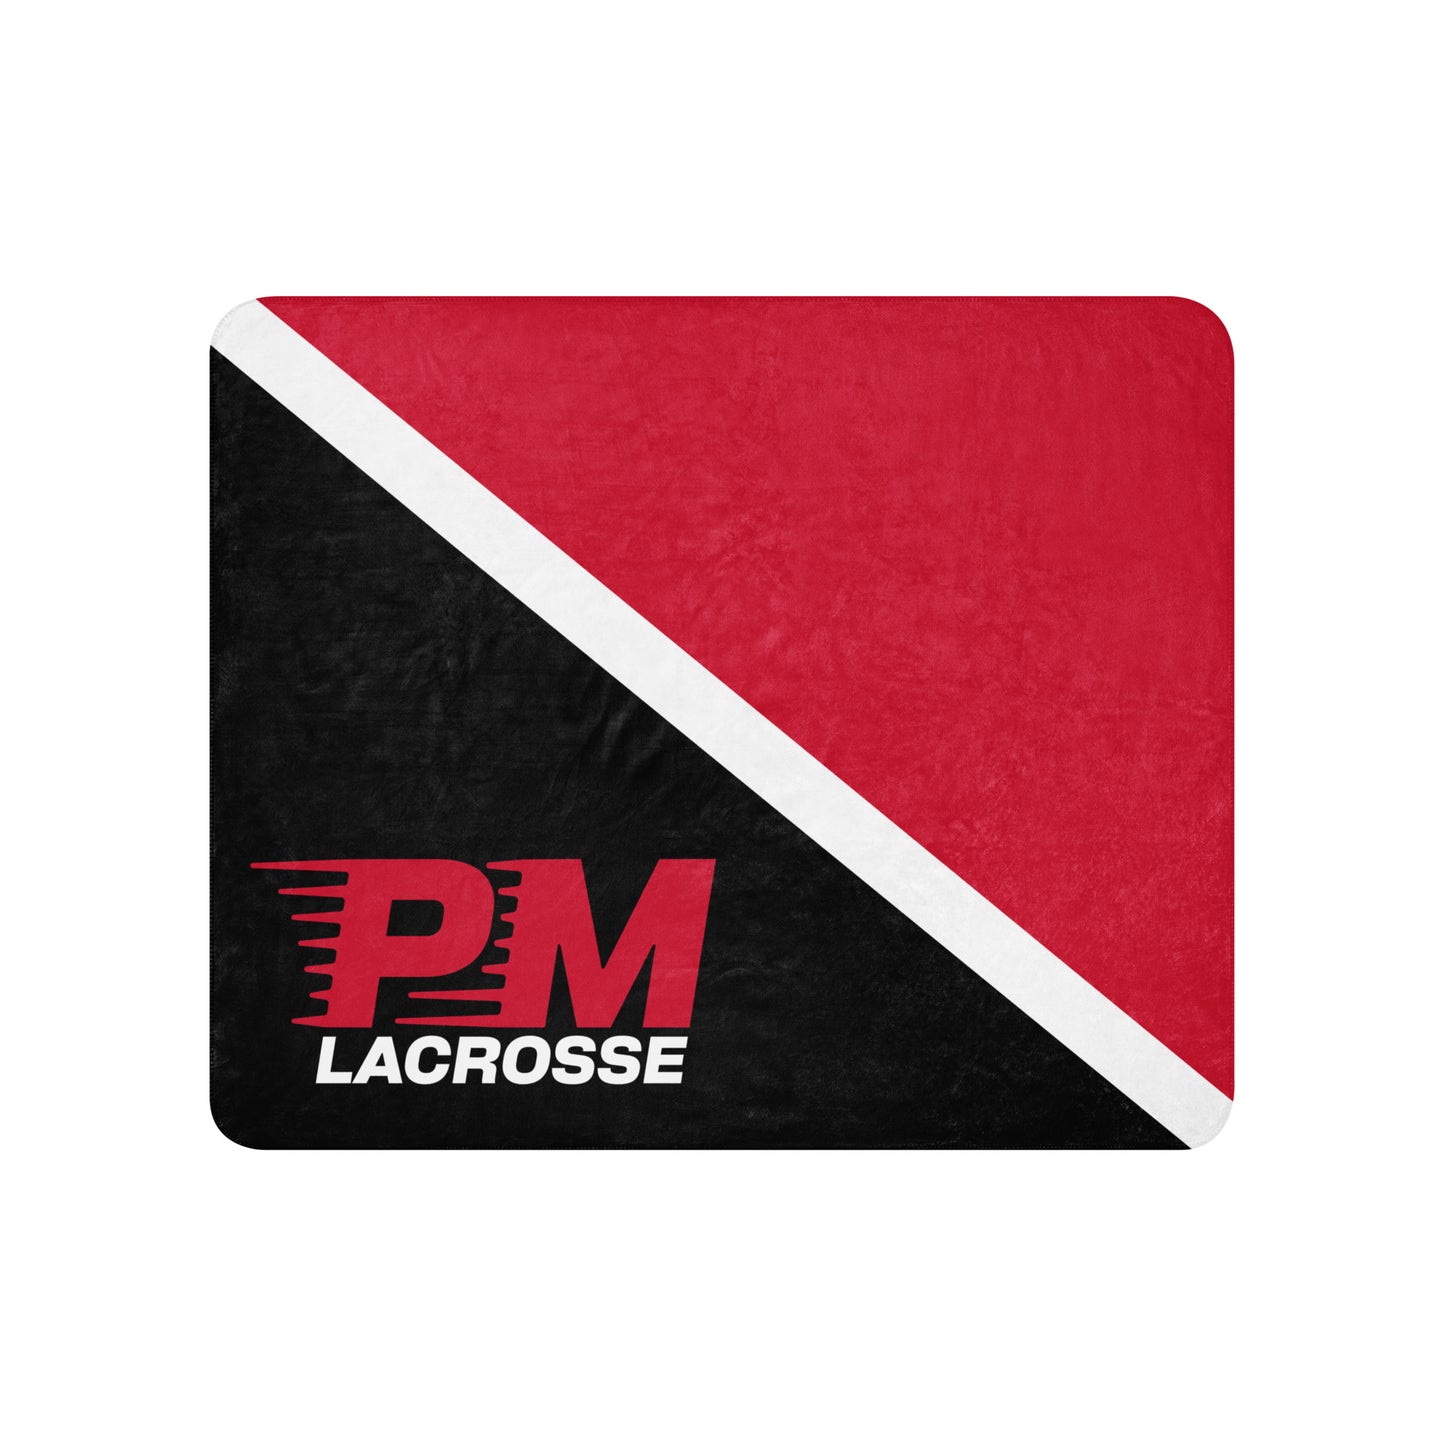 PM Lacrosse - Sherpa blanket